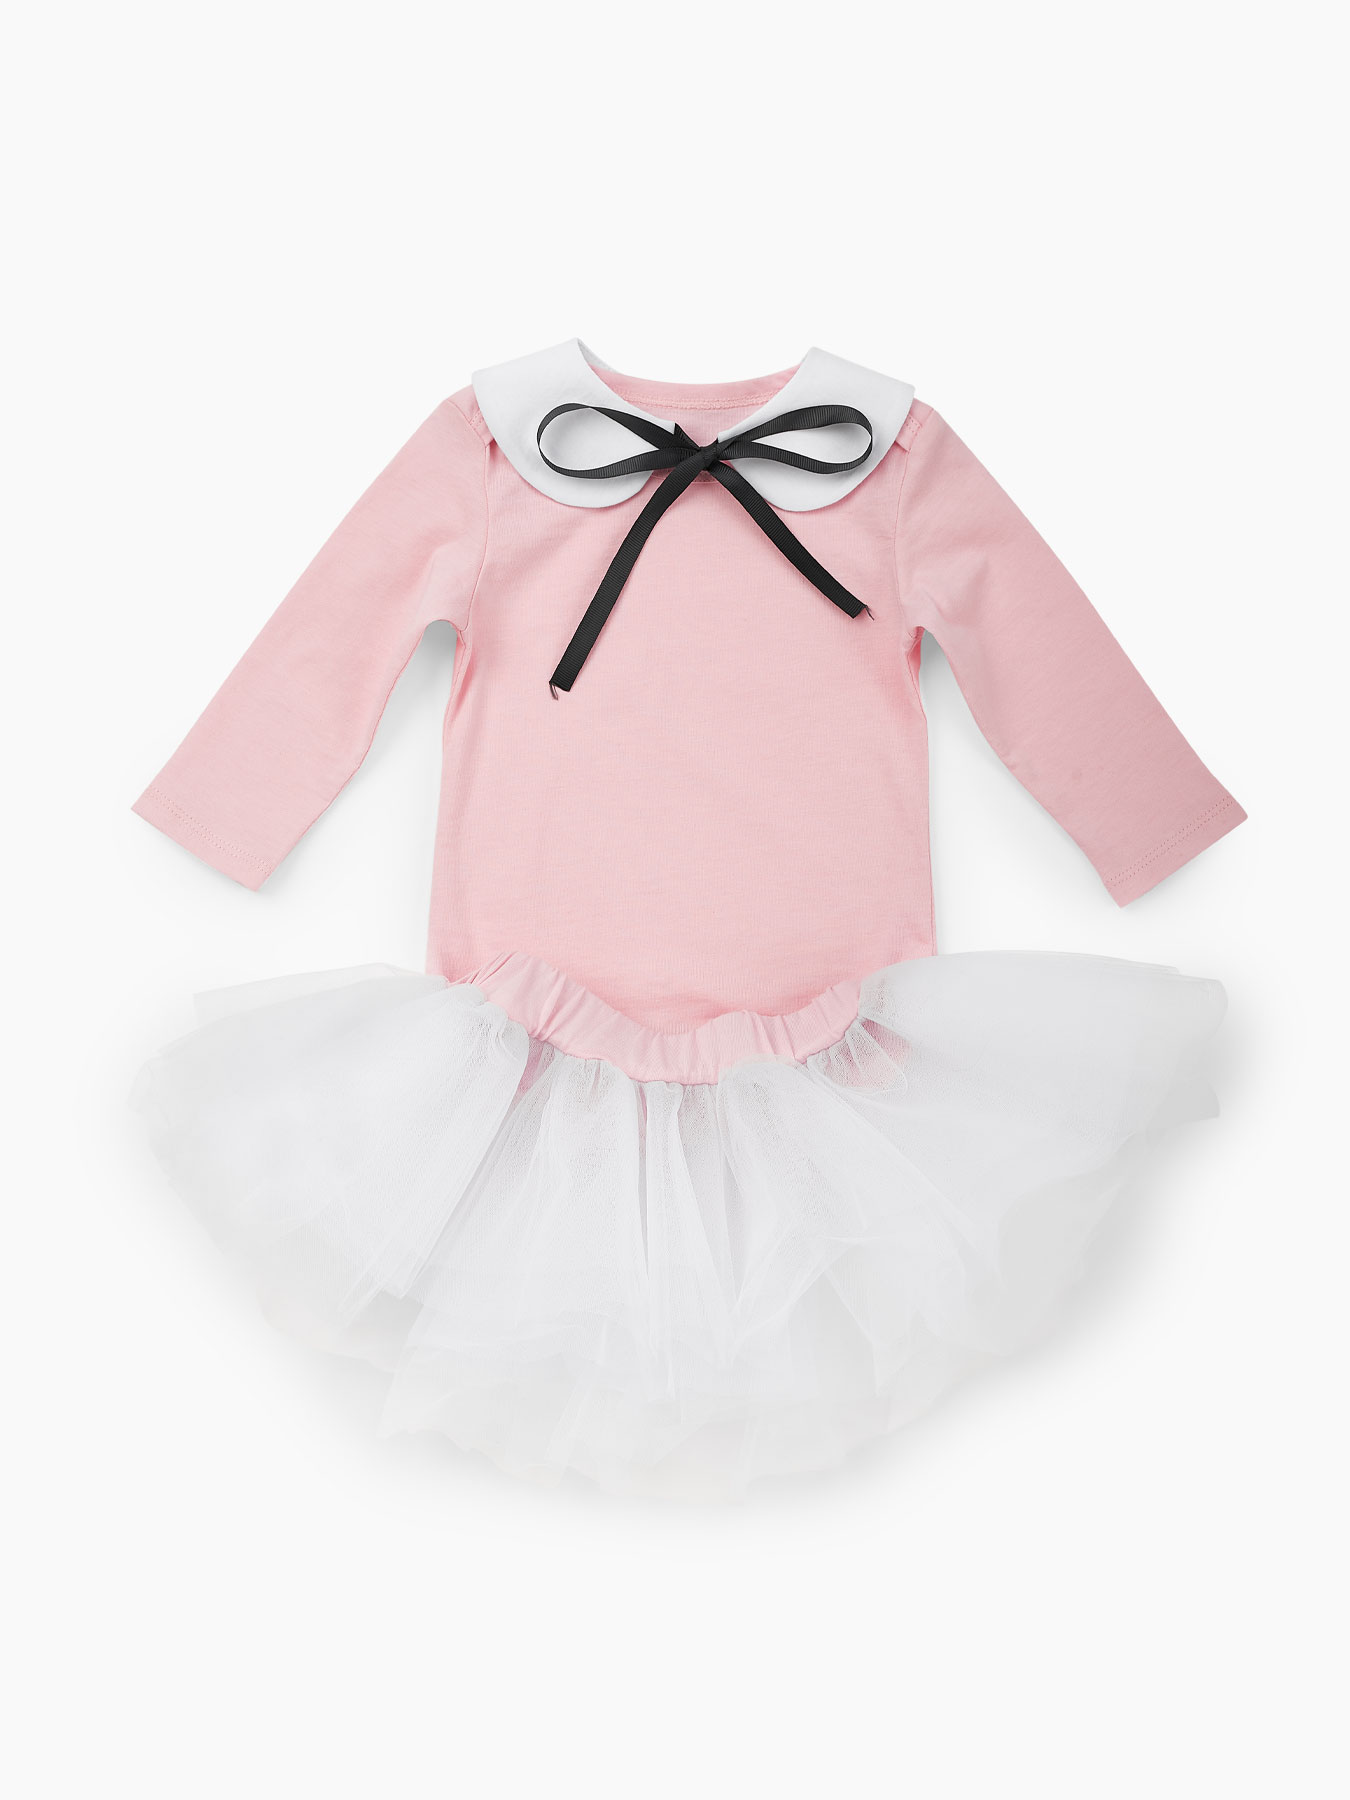 Комплект для девочек: боди, леггинсы и юбка Happy Baby розовый, белый 68